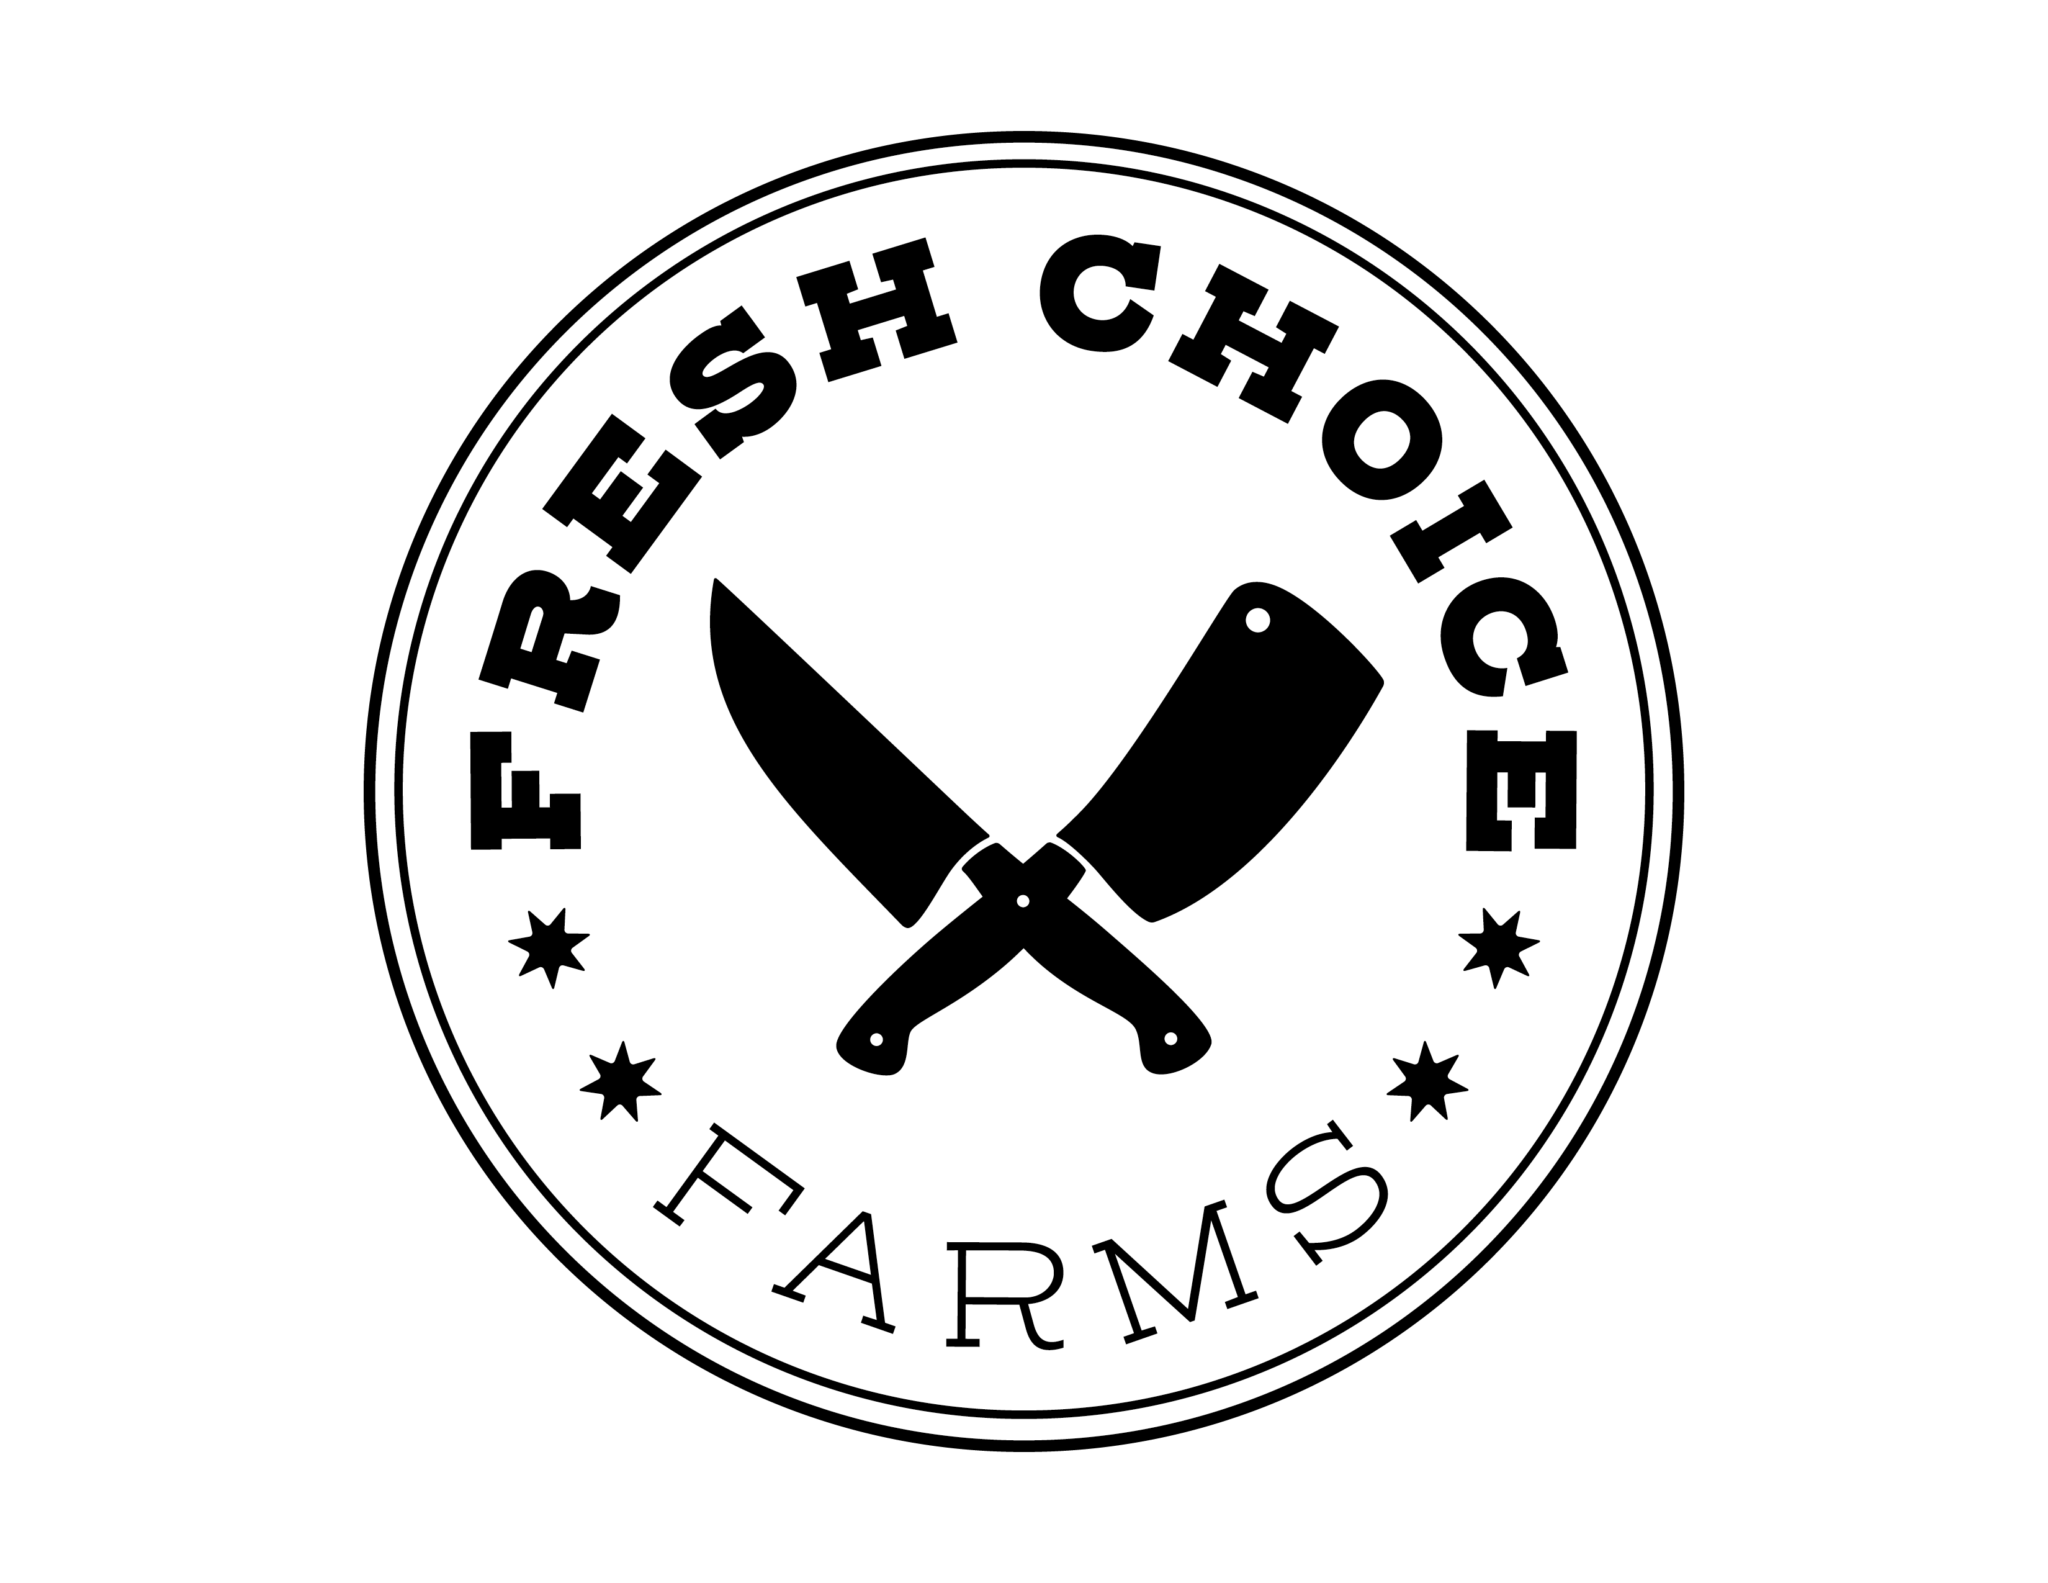 Fresh Choice Farms